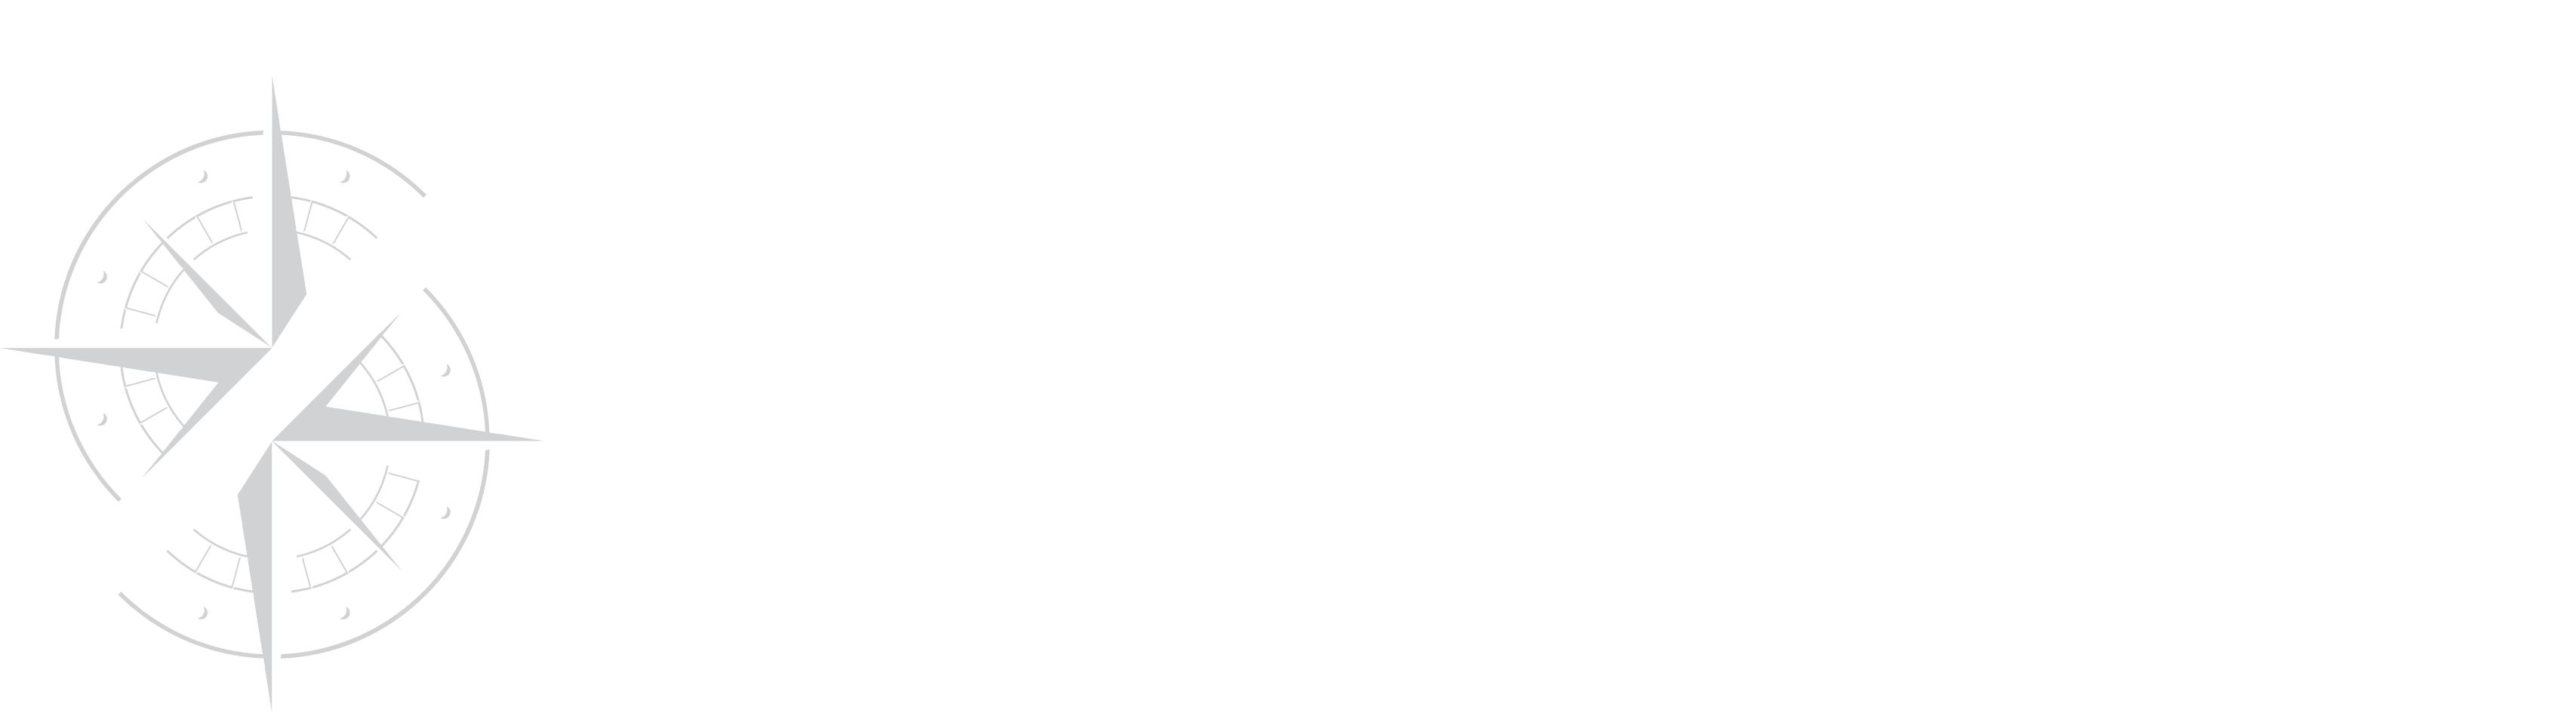 Norderbergs logo white